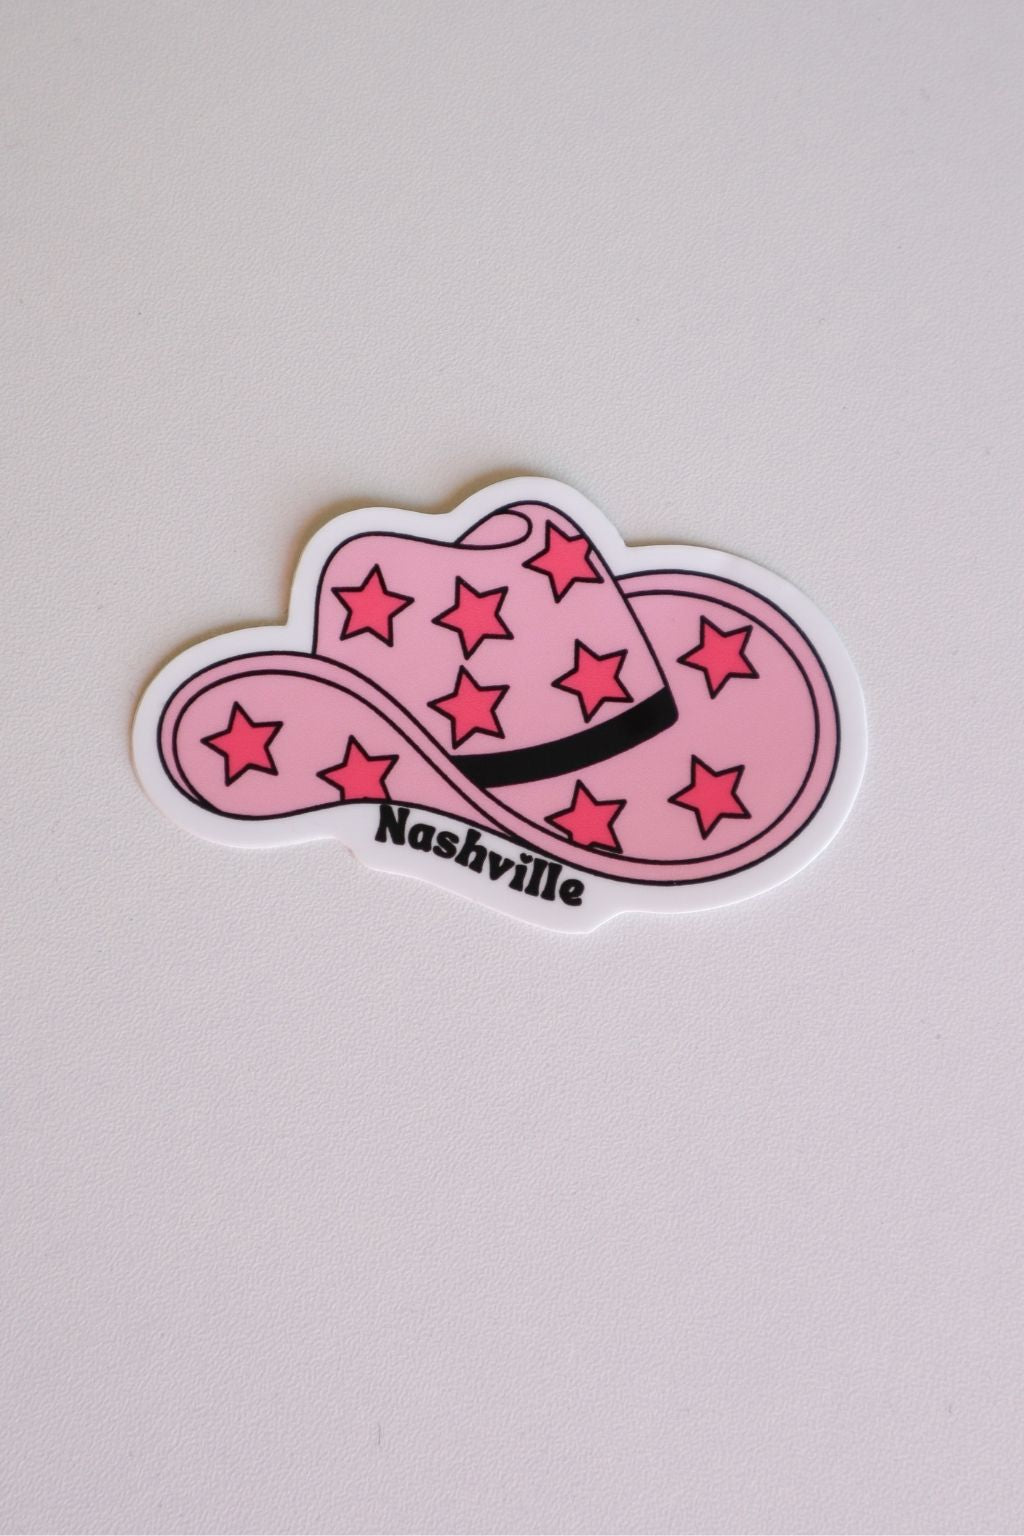 Nashville Sticker Pink Star Hat